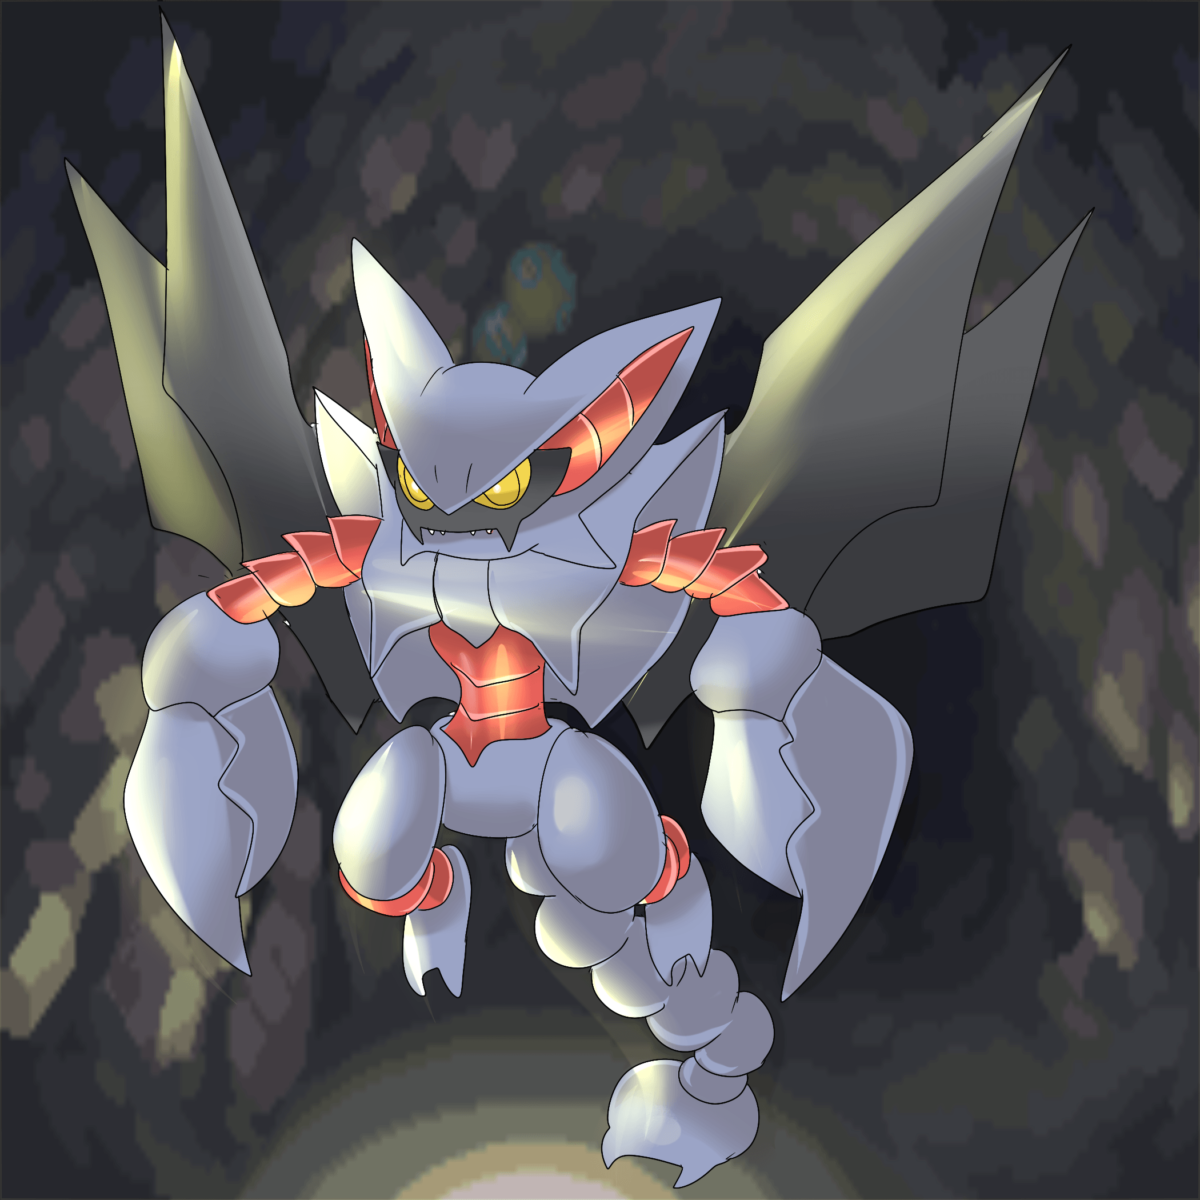 Gliscor Pokemon Anime Battle Art Images | Pokemon Images